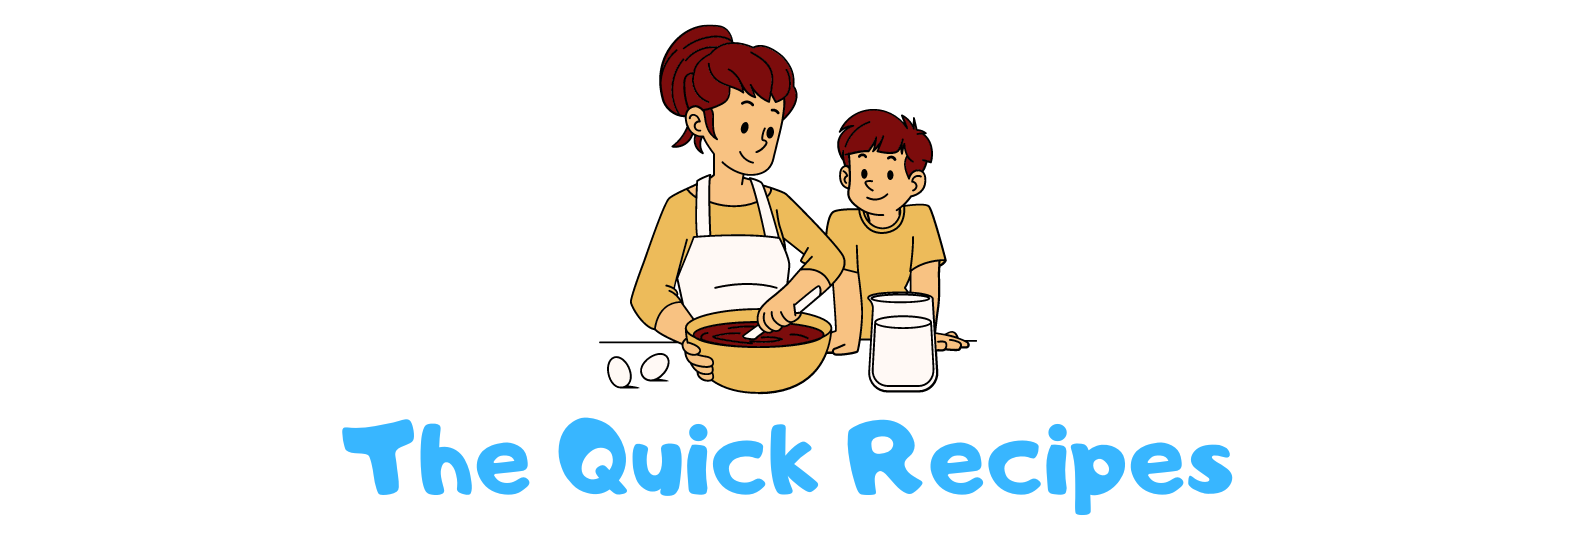 The Quick Recipes